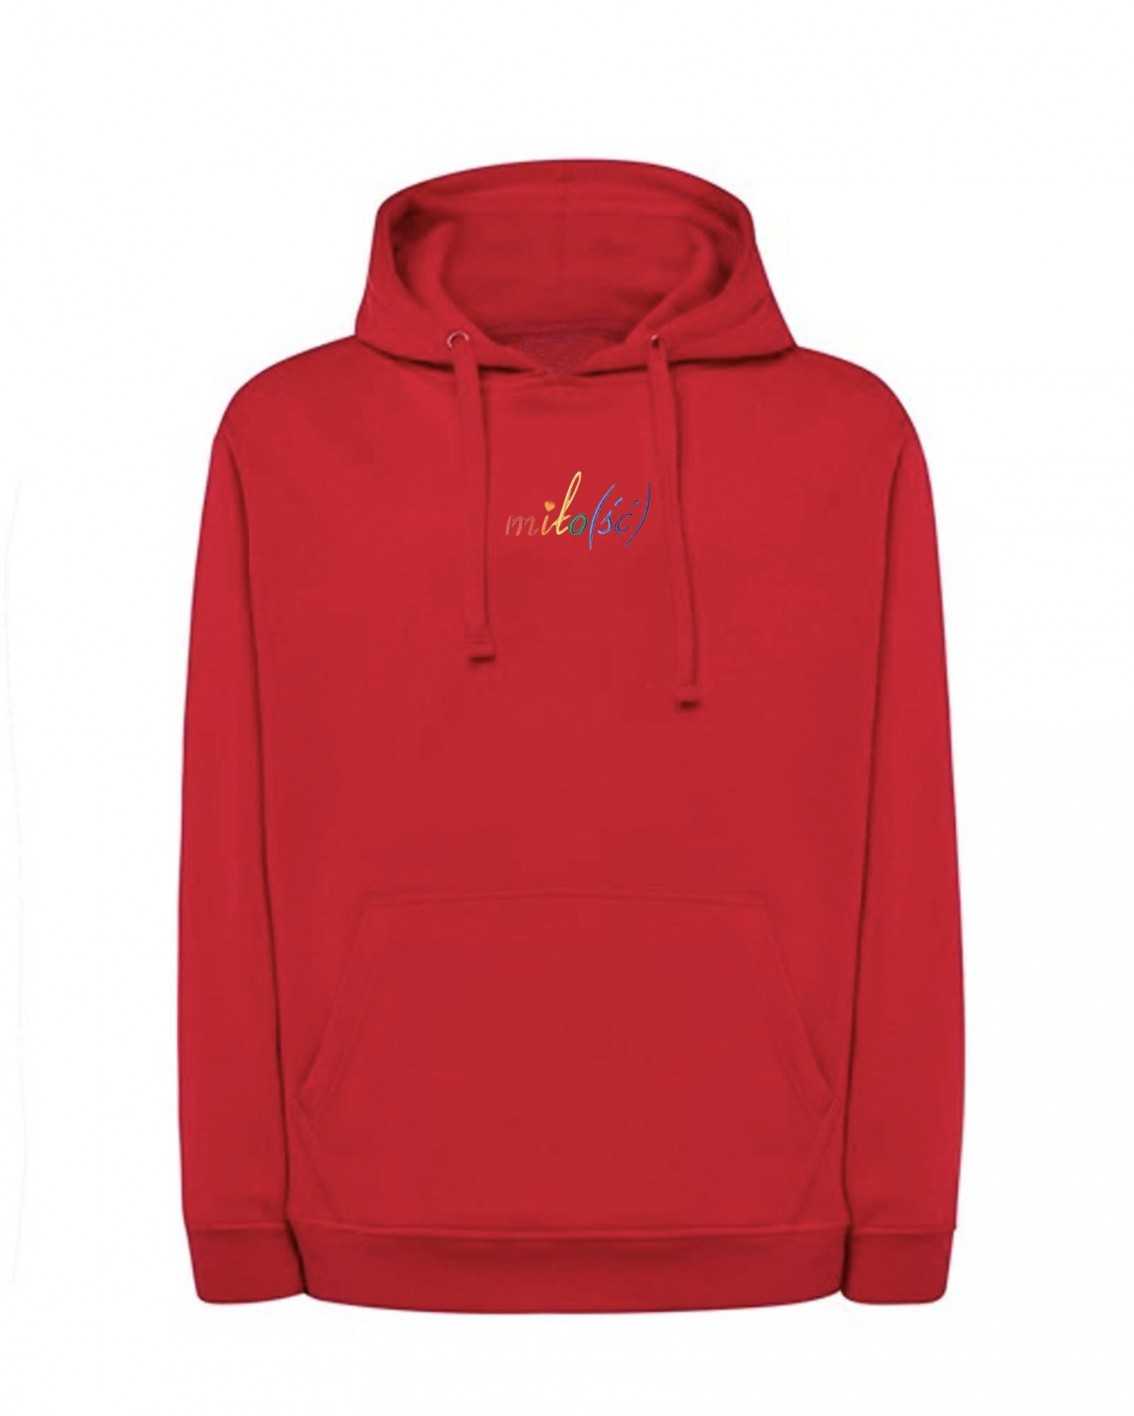 NOWOŚĆ! Original hoodie czerwona z tęczowym haftem Miło(ść)